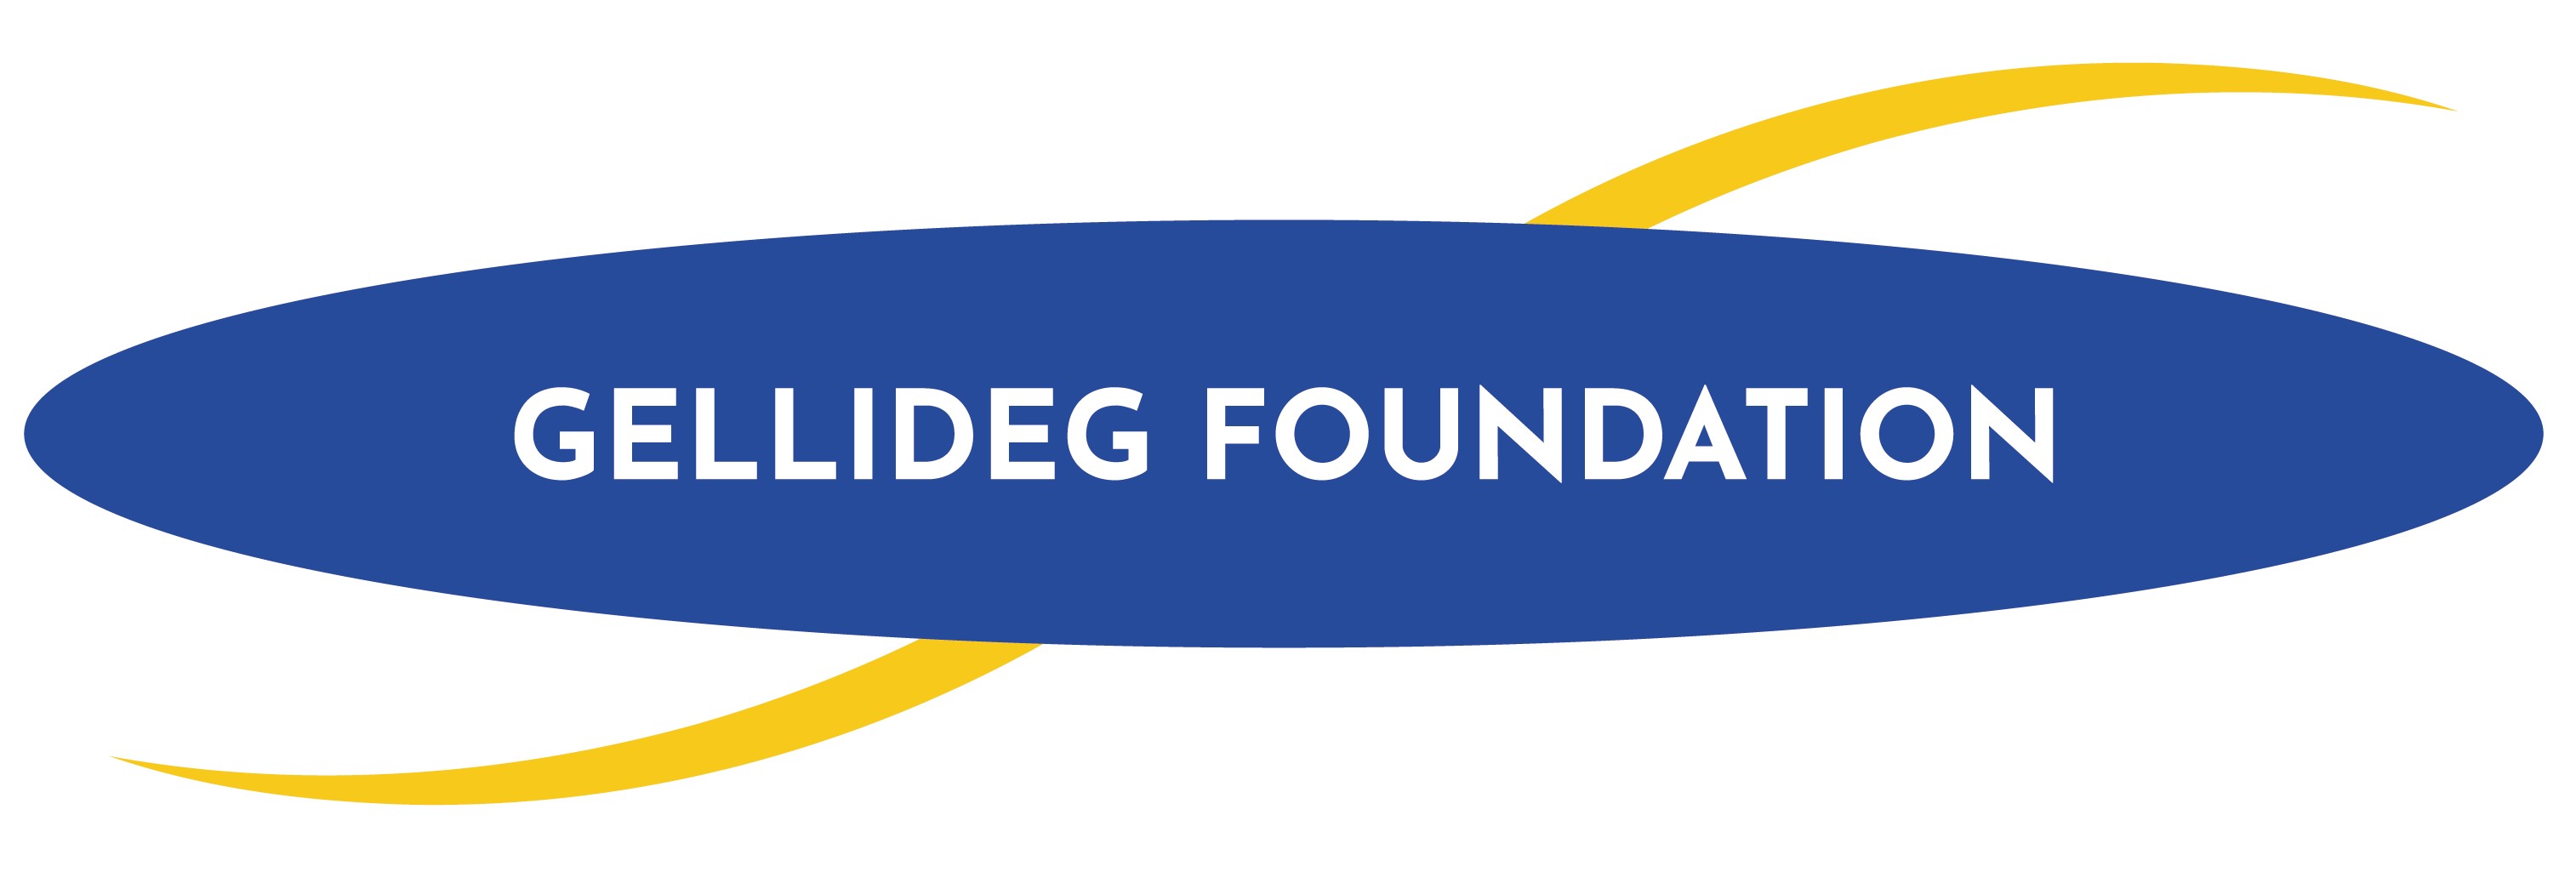 logo for Gellideg Foundation Group